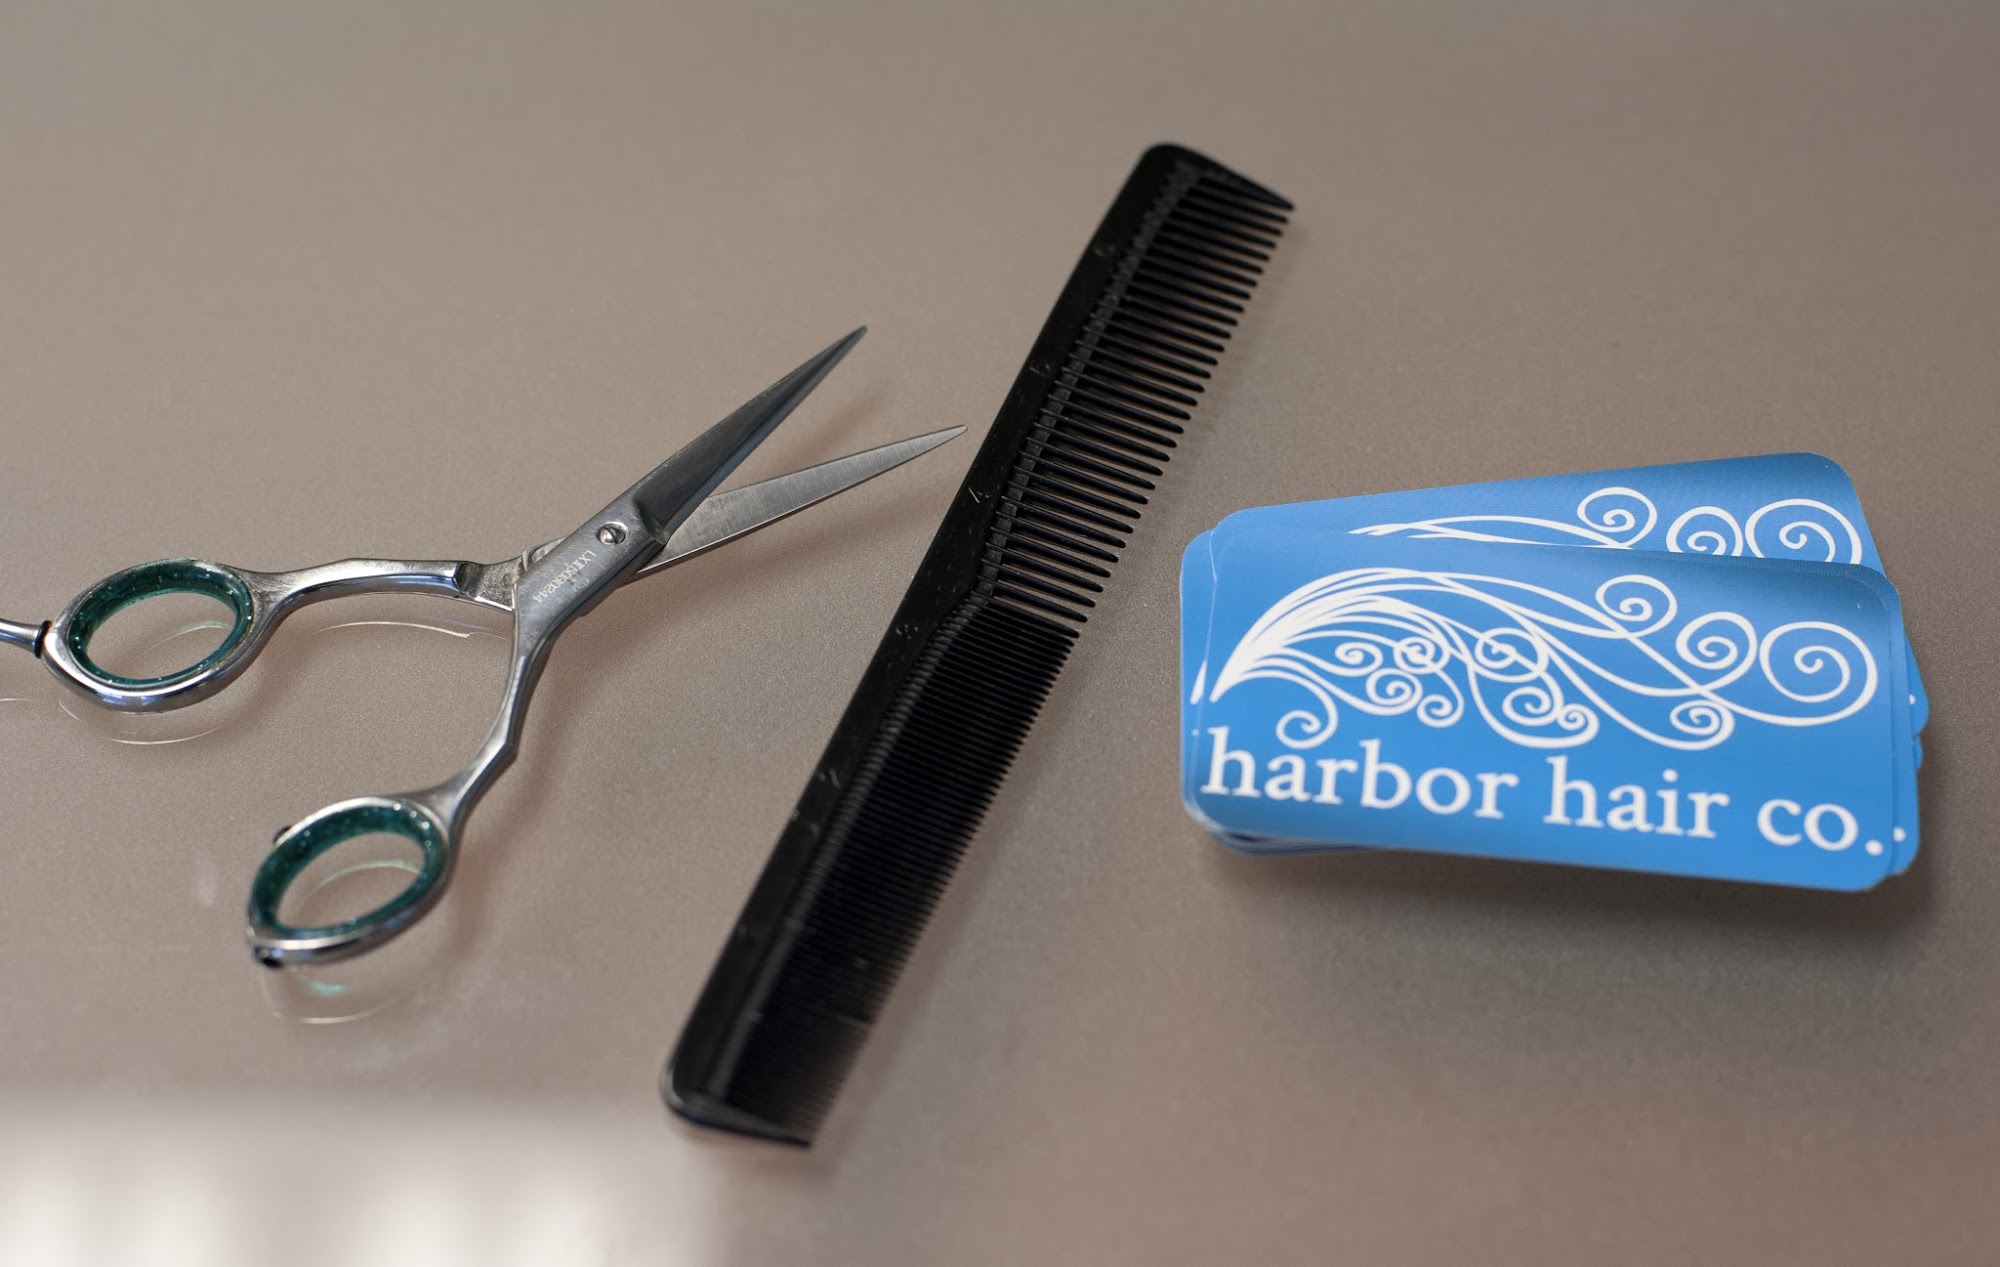 Harbor Hair Company